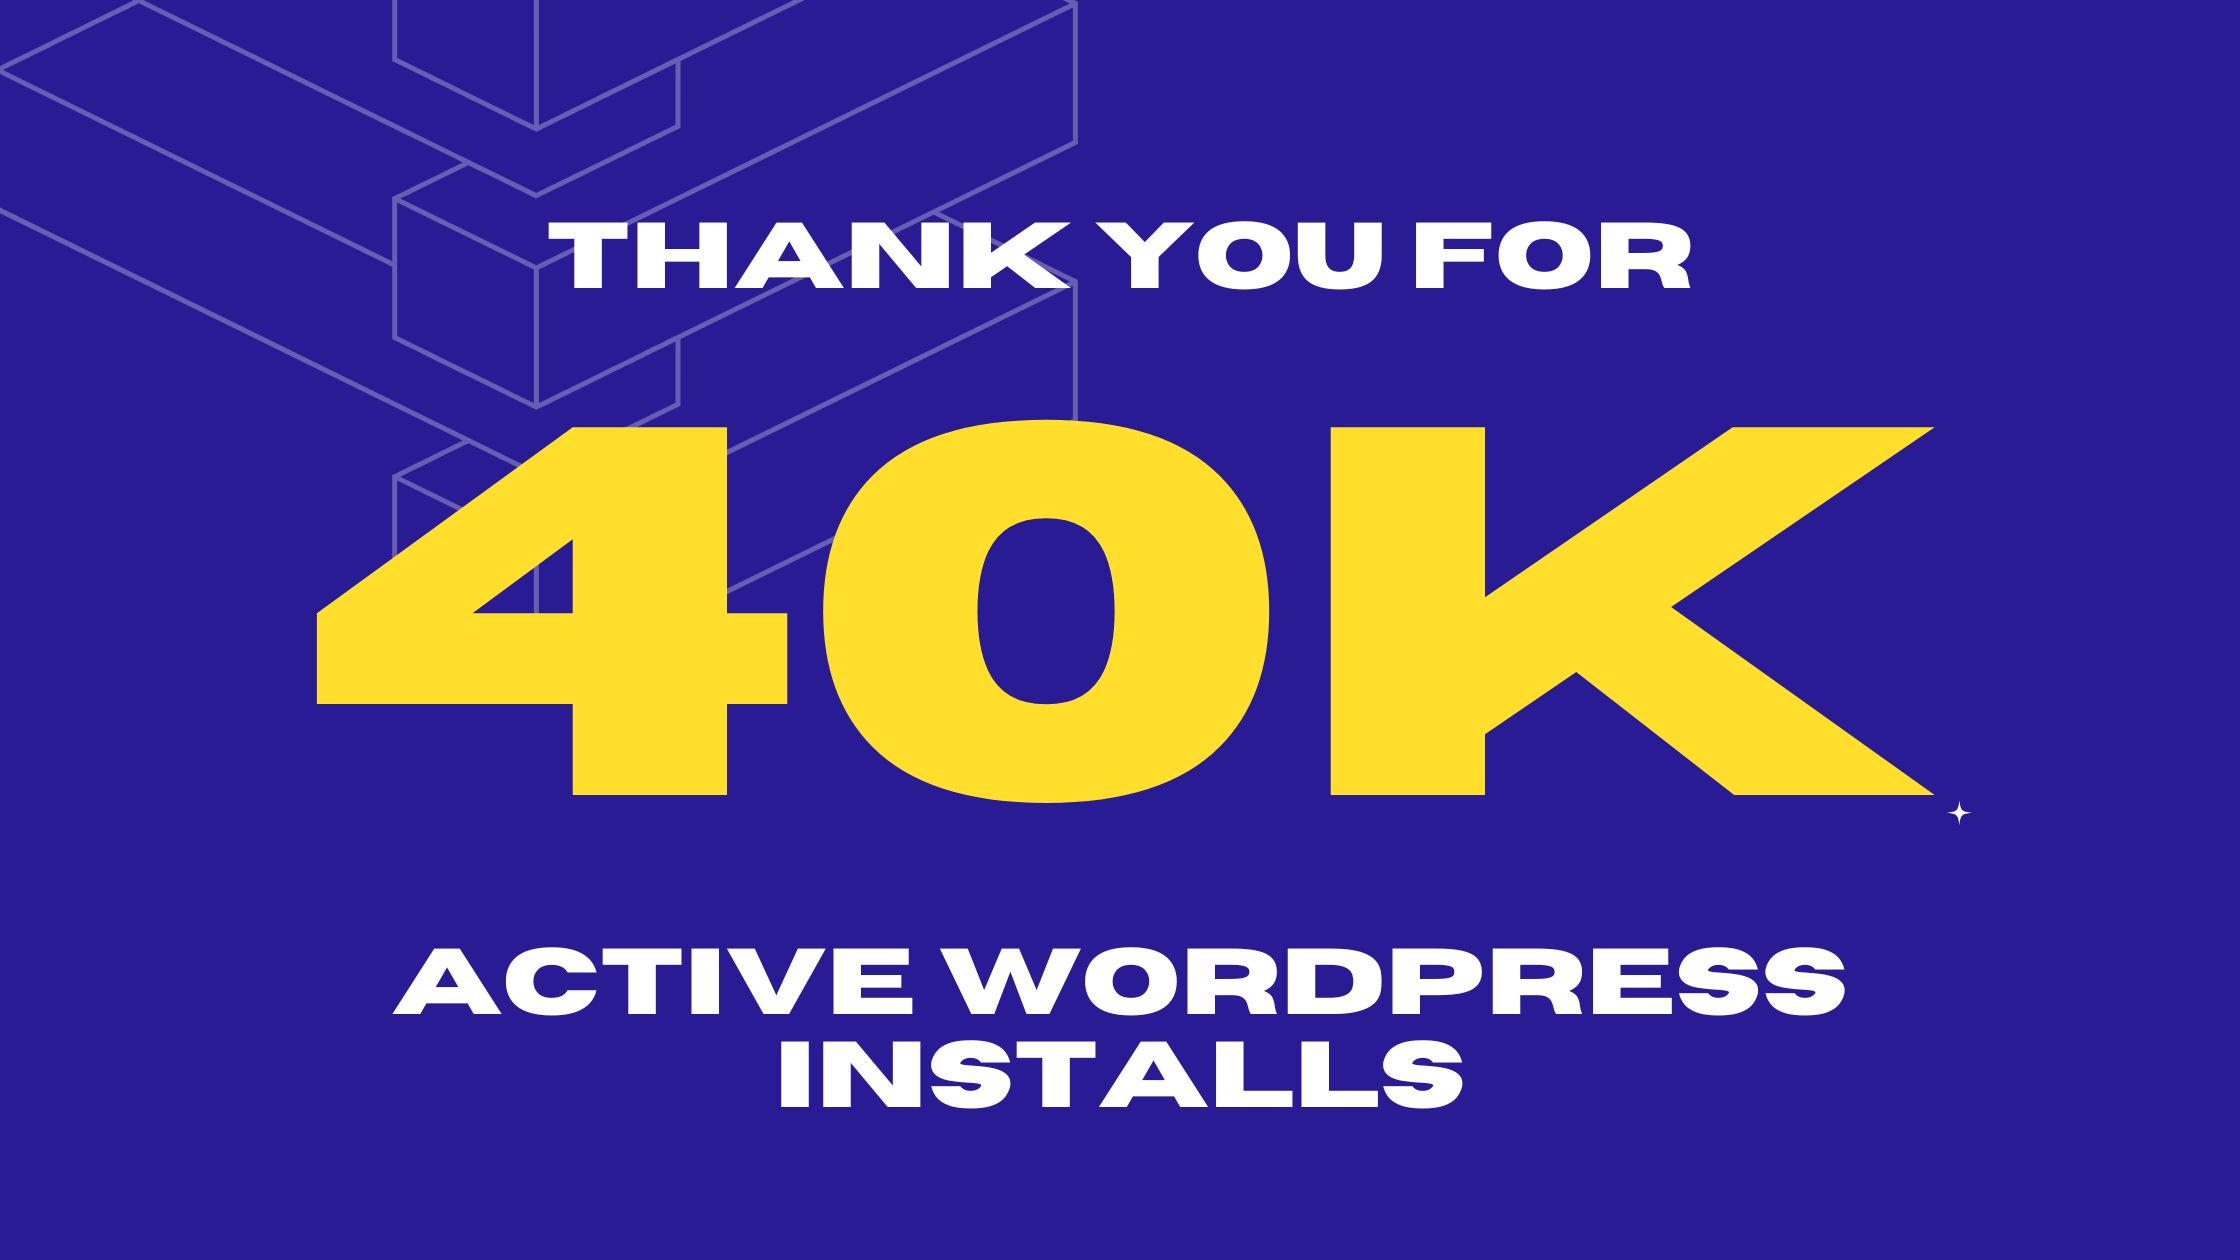 SpeedyCache Crossed 40K Active WordPress installs